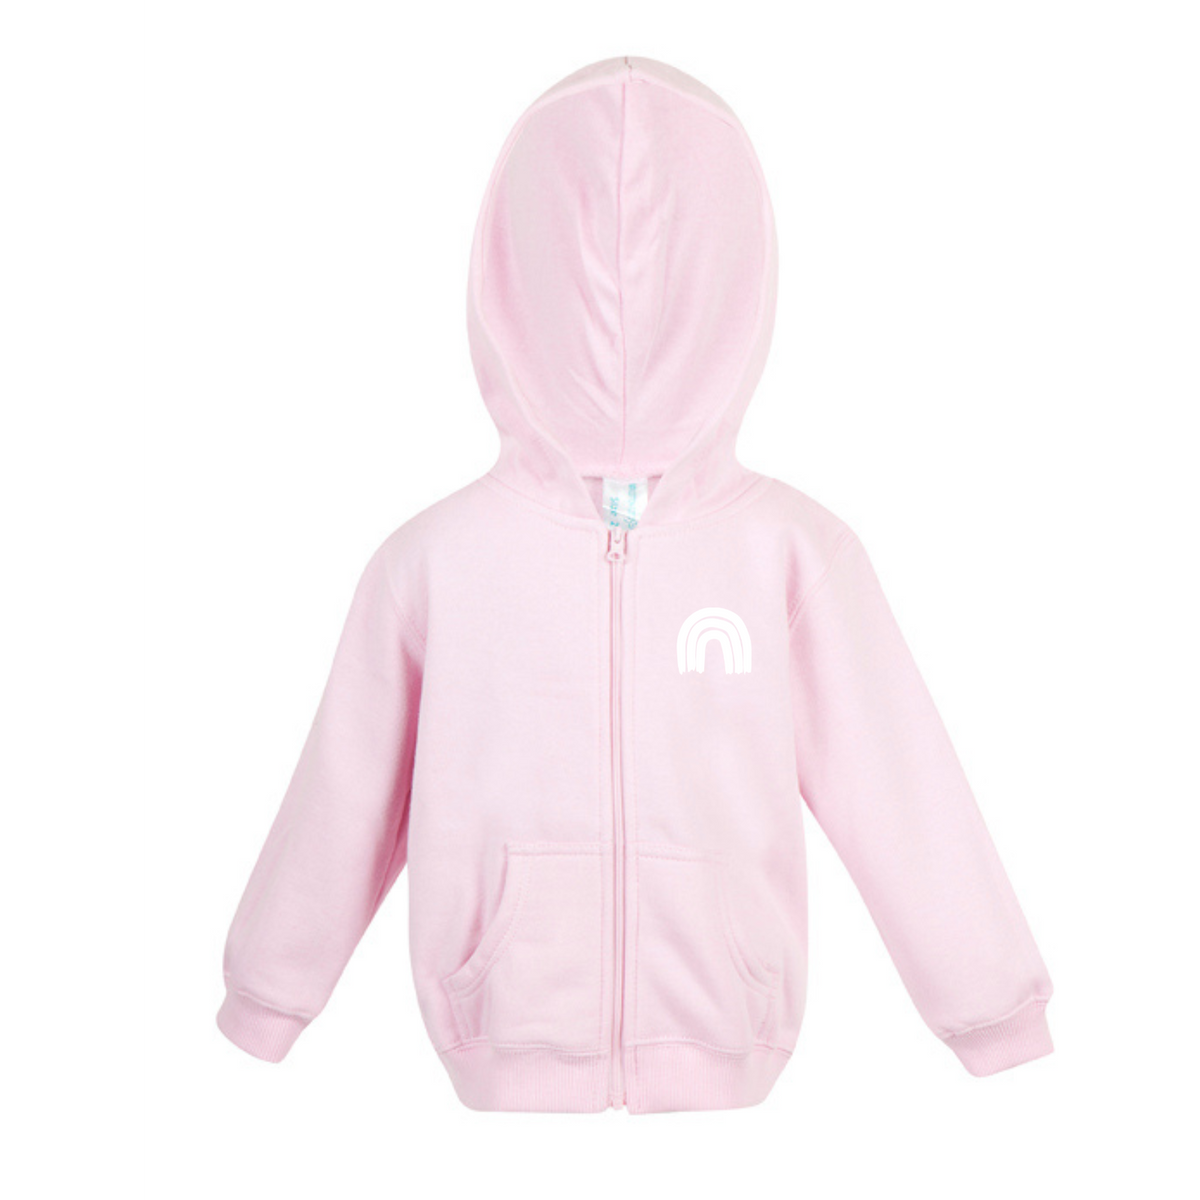 Tumby Bay Kindergarten Kids Fleece Zip Hoodie Cotton Blend  F100ZZ-Collins Clothing Co